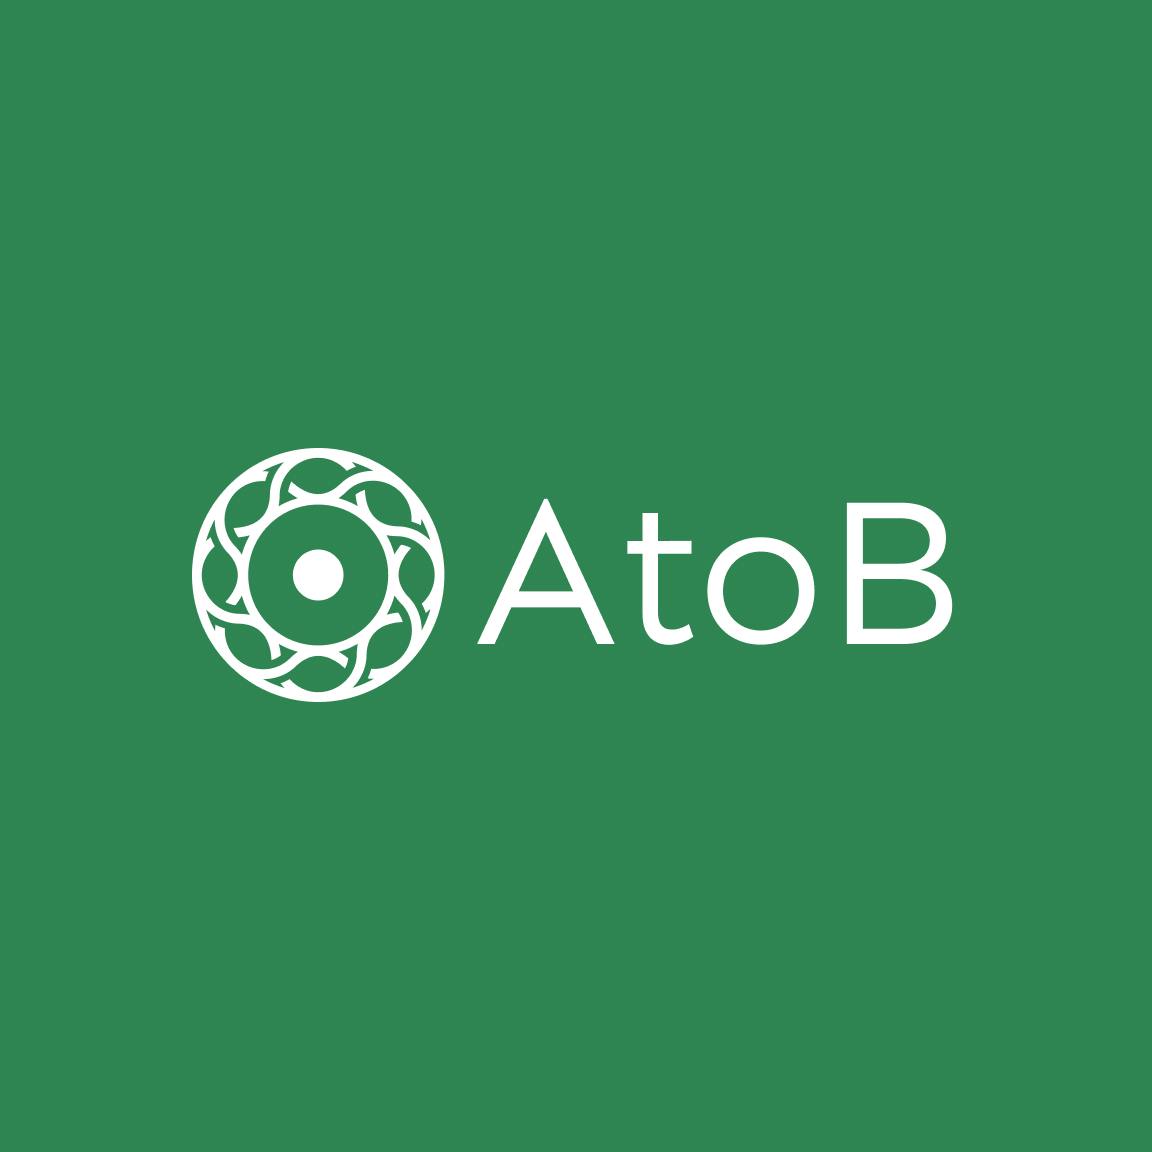 AtoB logo